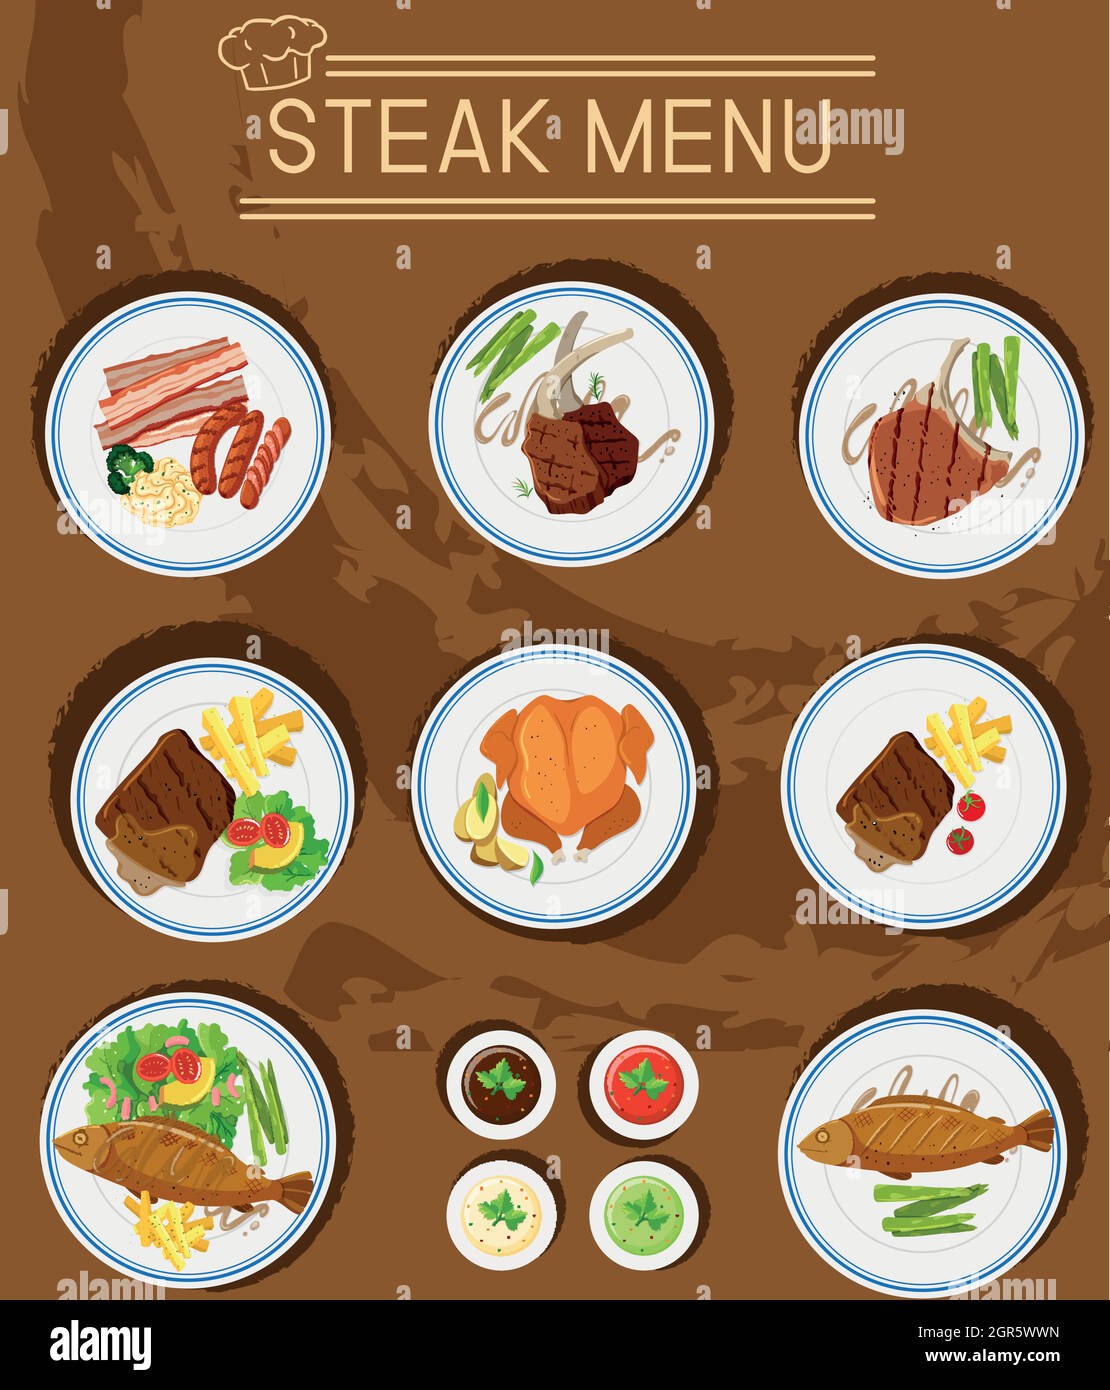 Steakmenü mit verschiedenen Fleischsorten Stock Vektor